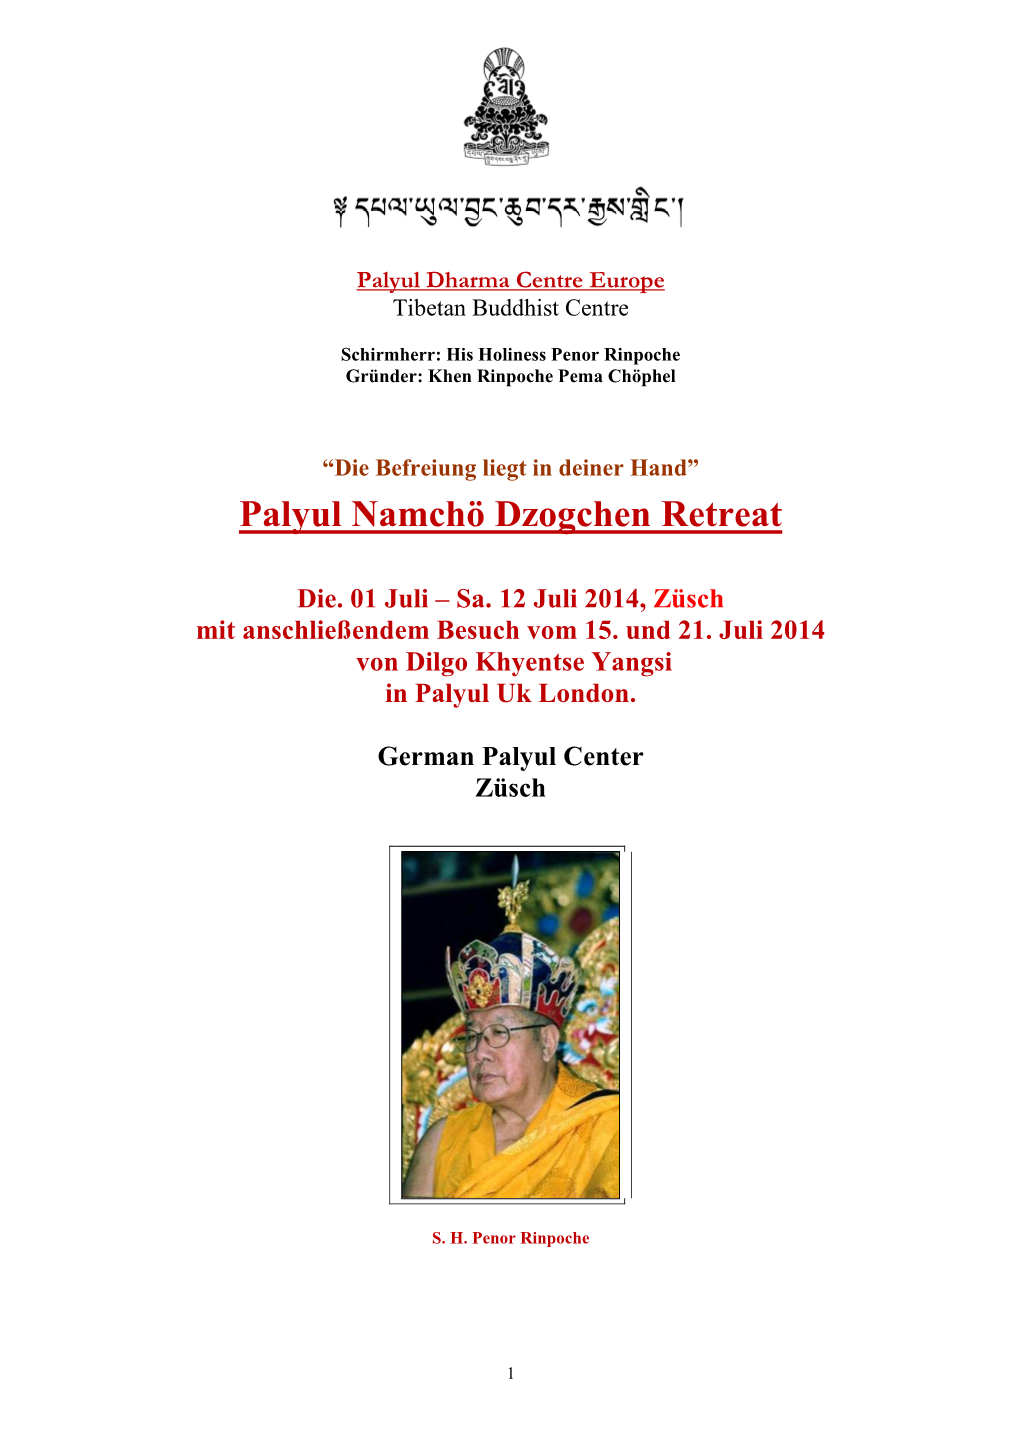 Palyul Namcho Dzogchen Retreat 2014